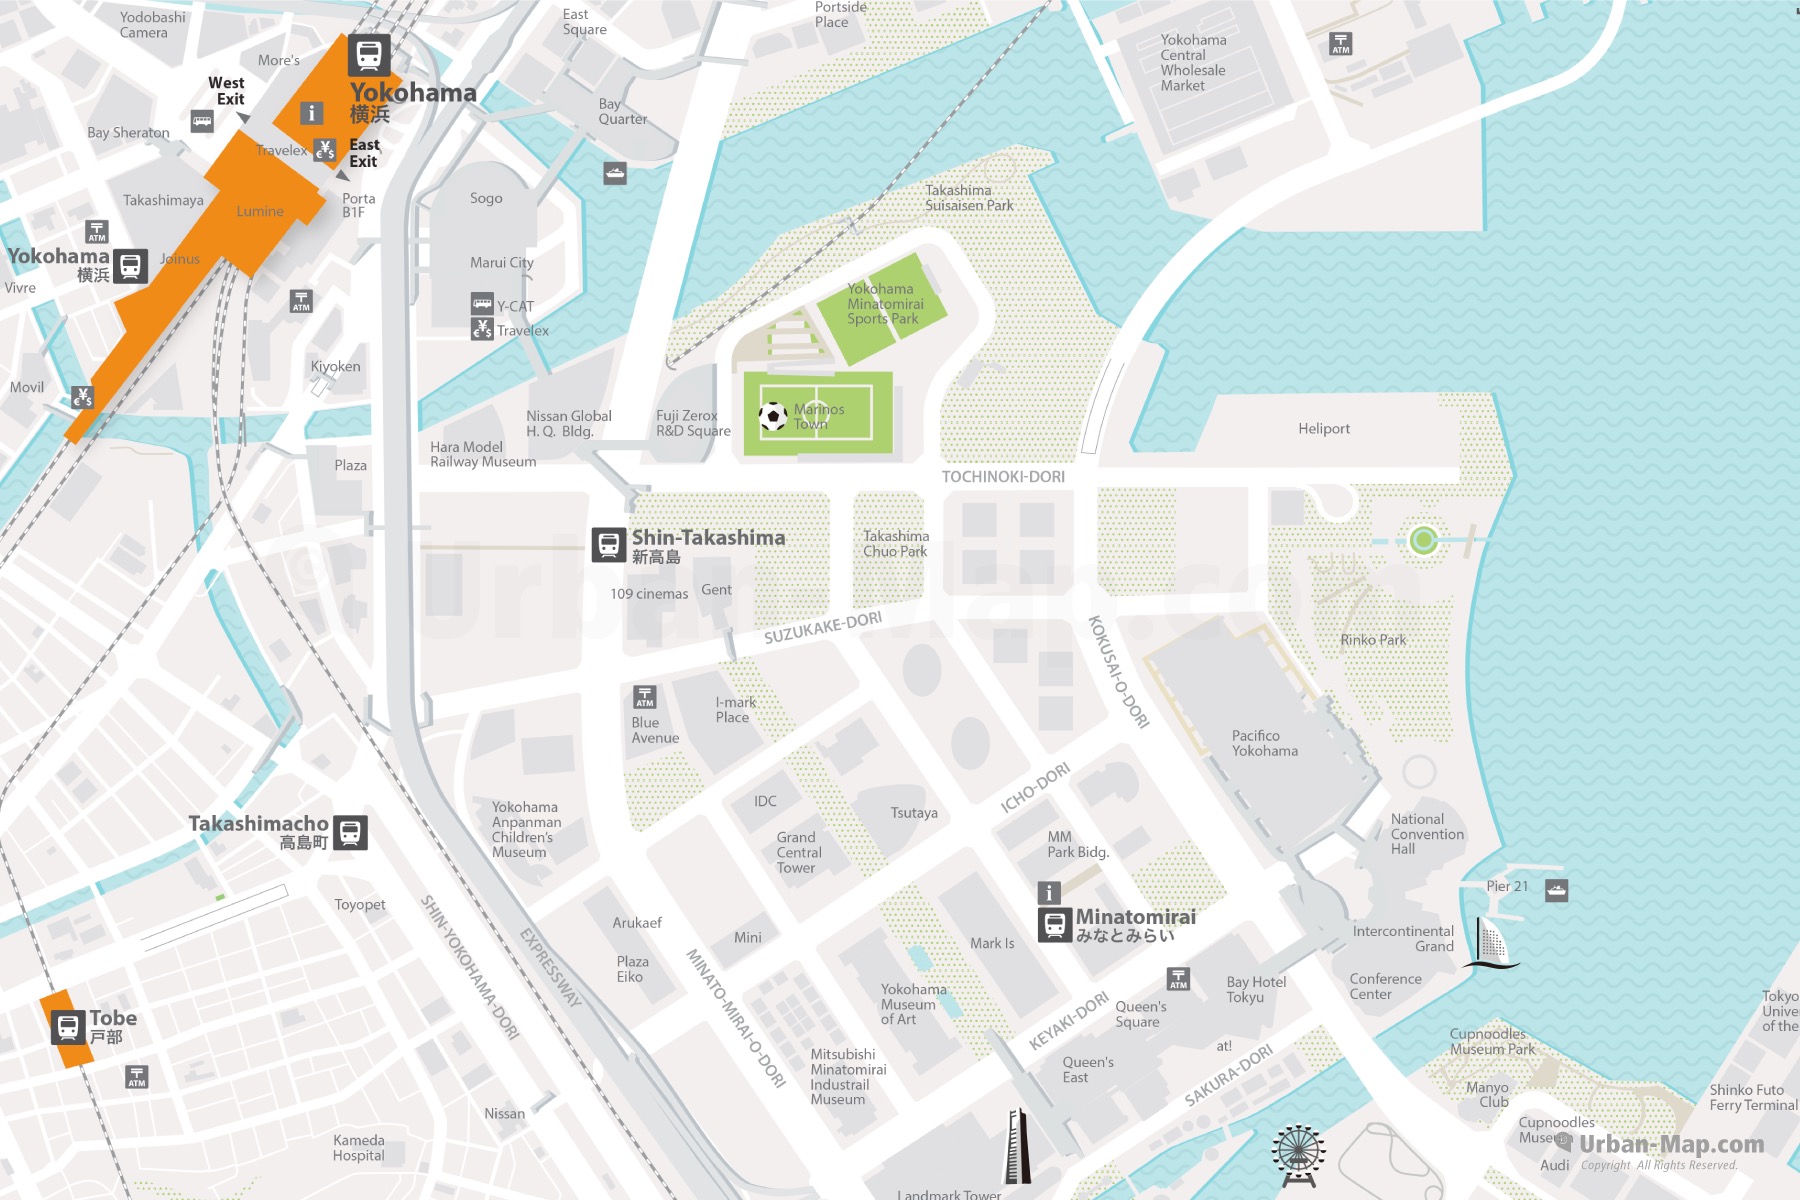 Tokyo WiFi Map - Find Free Wifi Access, Even Offline!